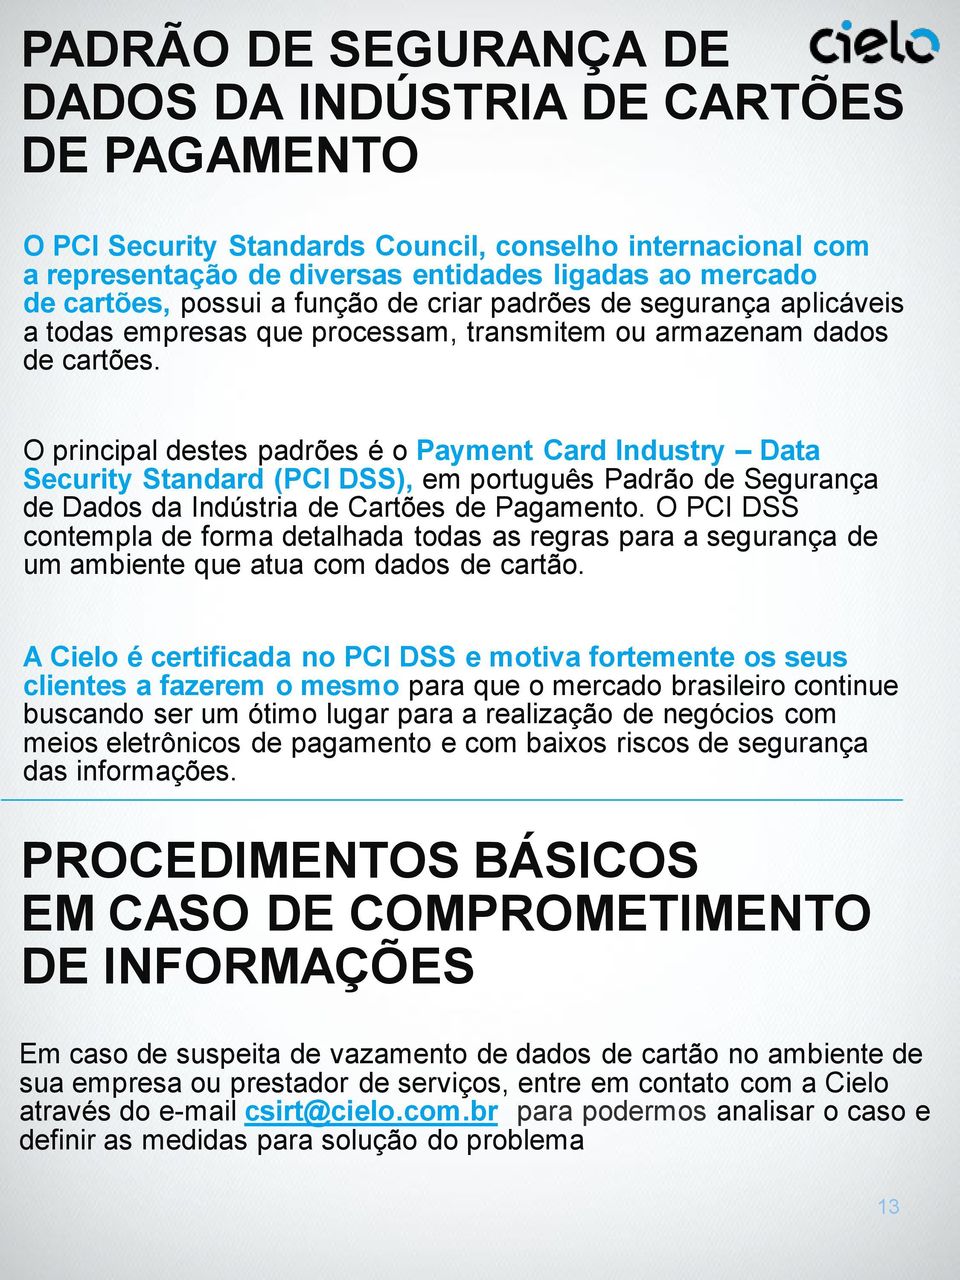 O principal destes padrões é o Payment Card Industry Data Security Standard (PCI DSS), em português Padrão de Segurança de Dados da Indústria de Cartões de Pagamento.